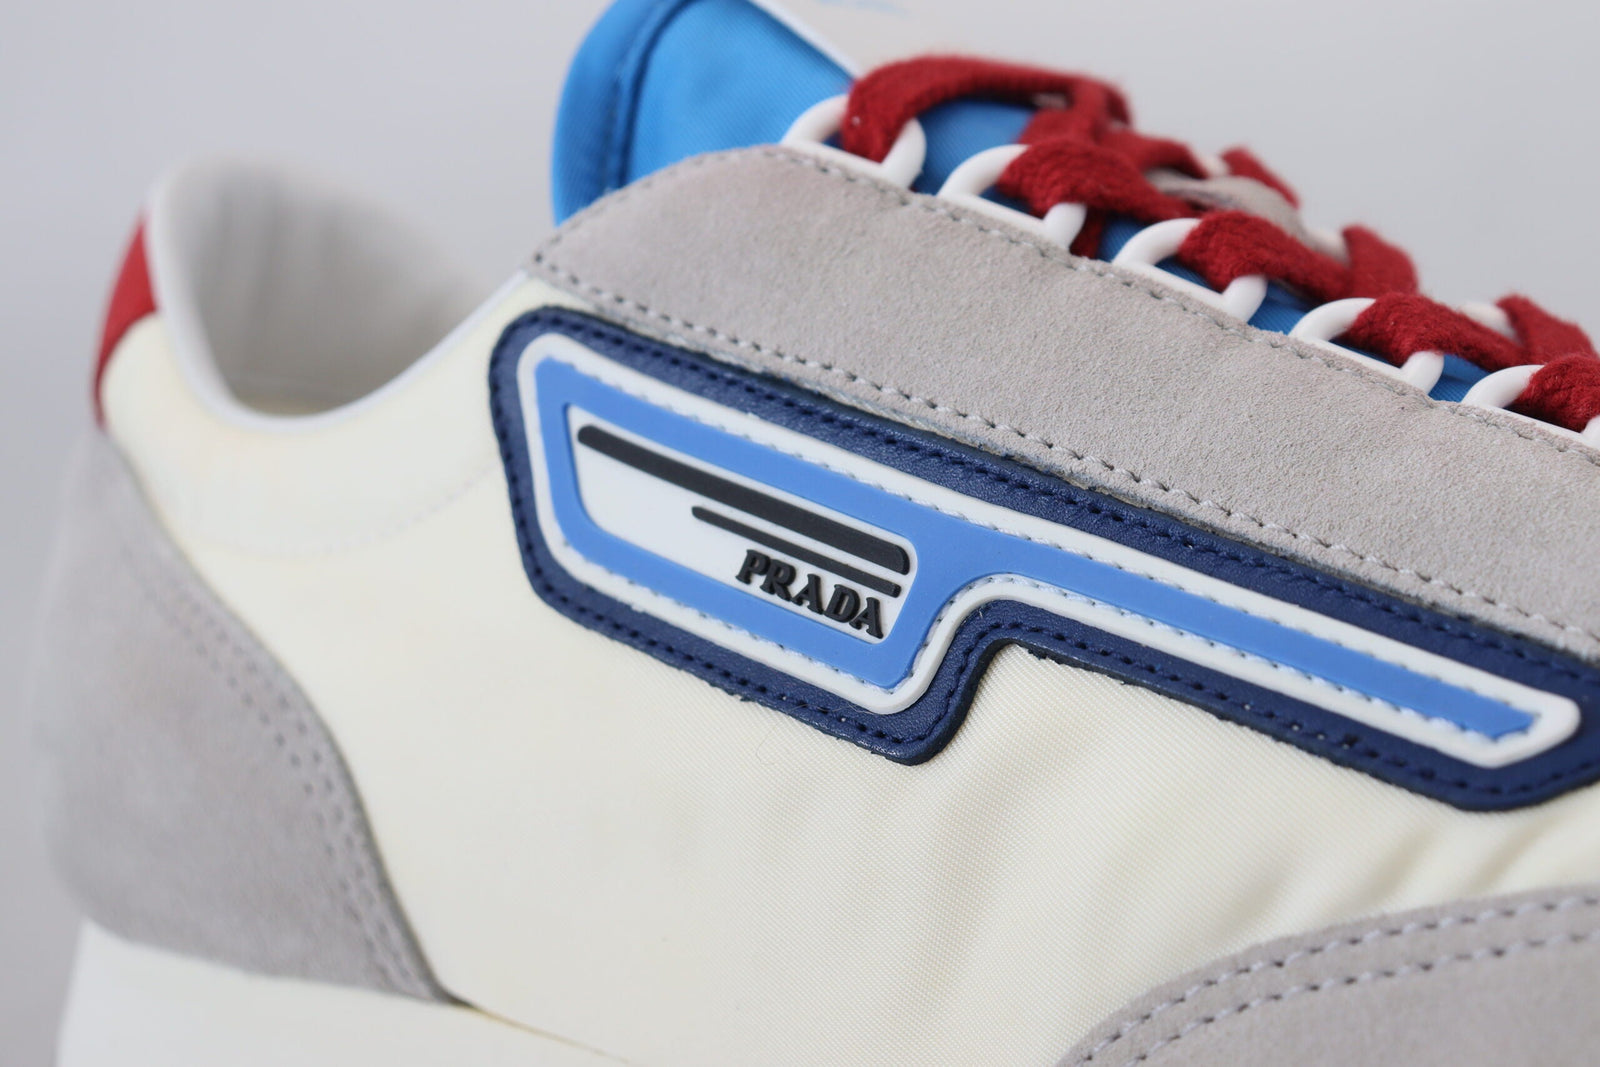 Prada Multicolor Milano 70 Suede Running Sneakers Shoes